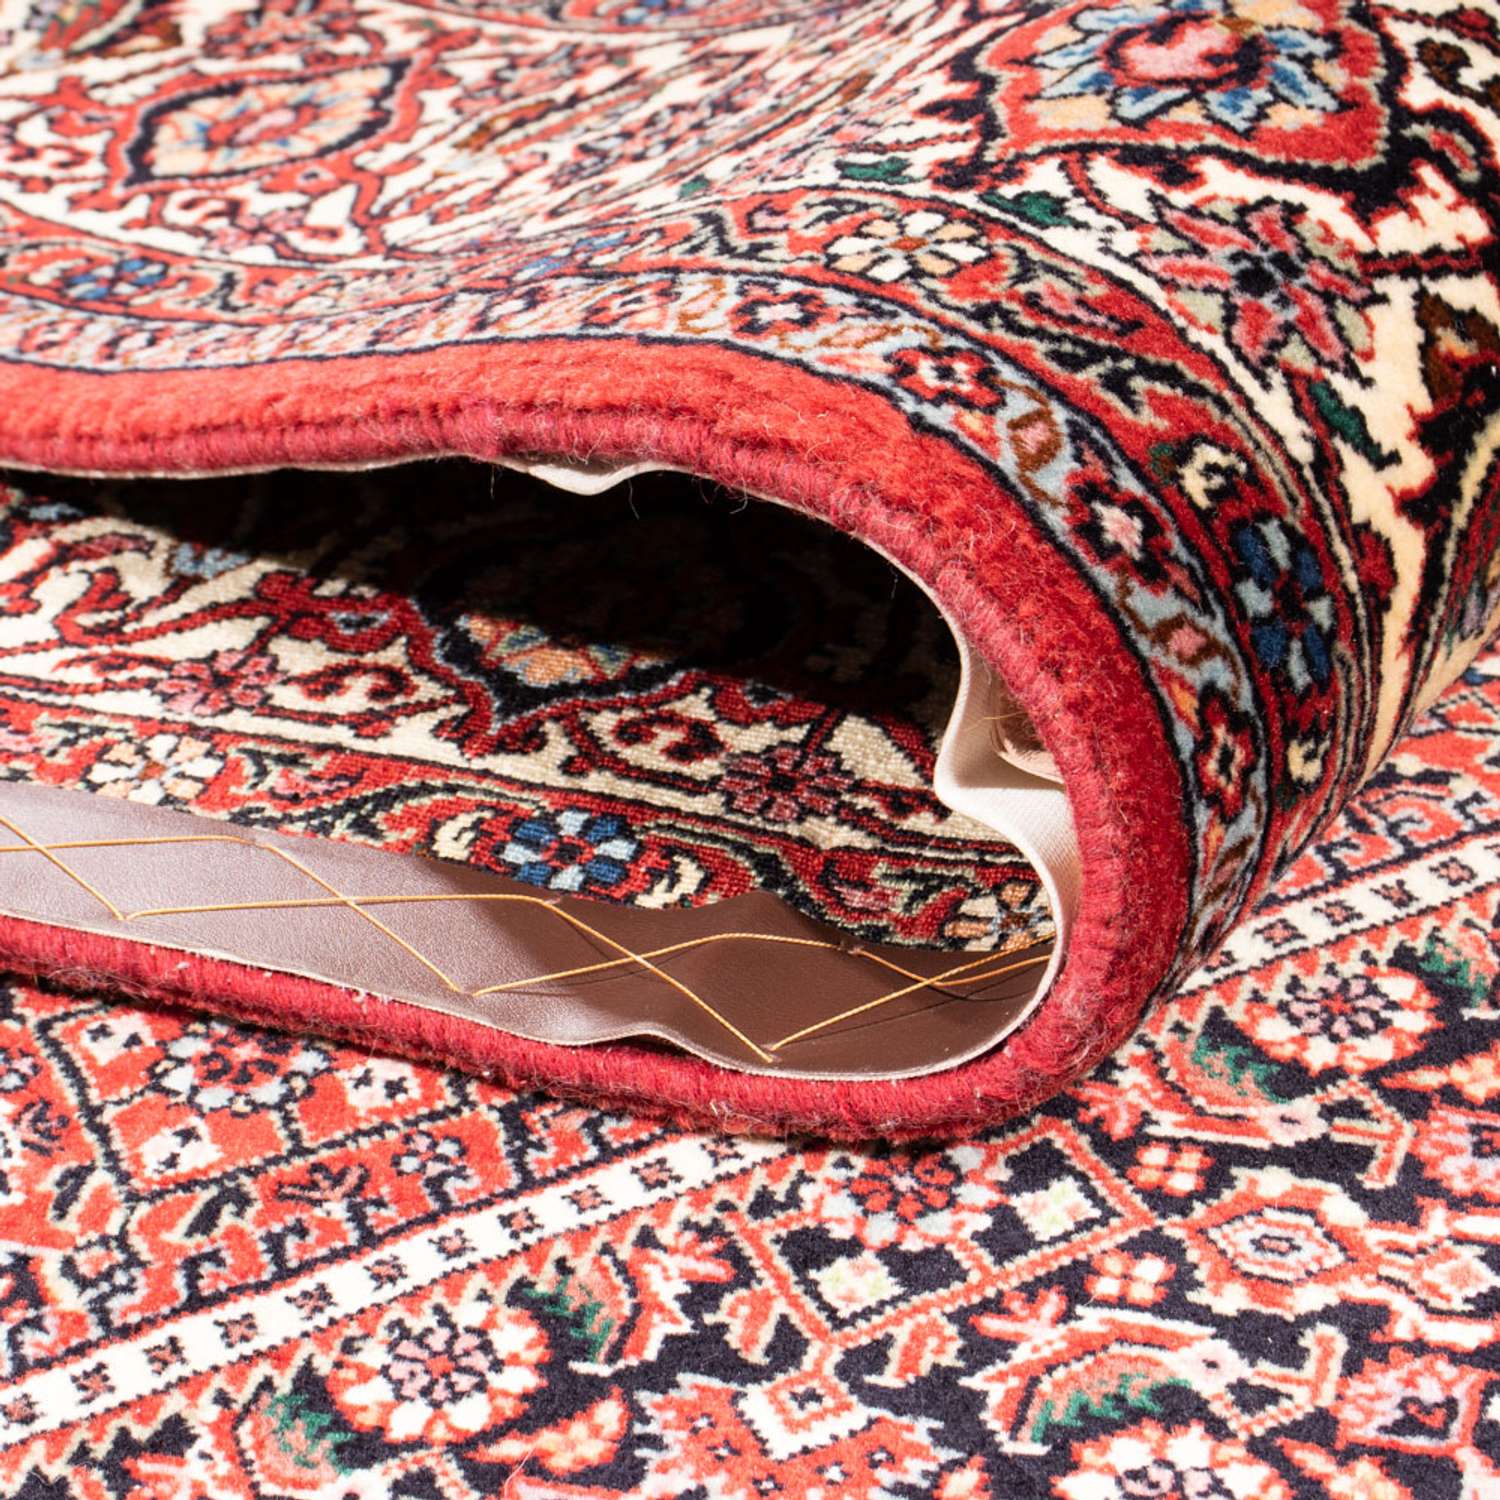 Perzisch tapijt - Bijar - Koninklijk - 252 x 174 cm - rood